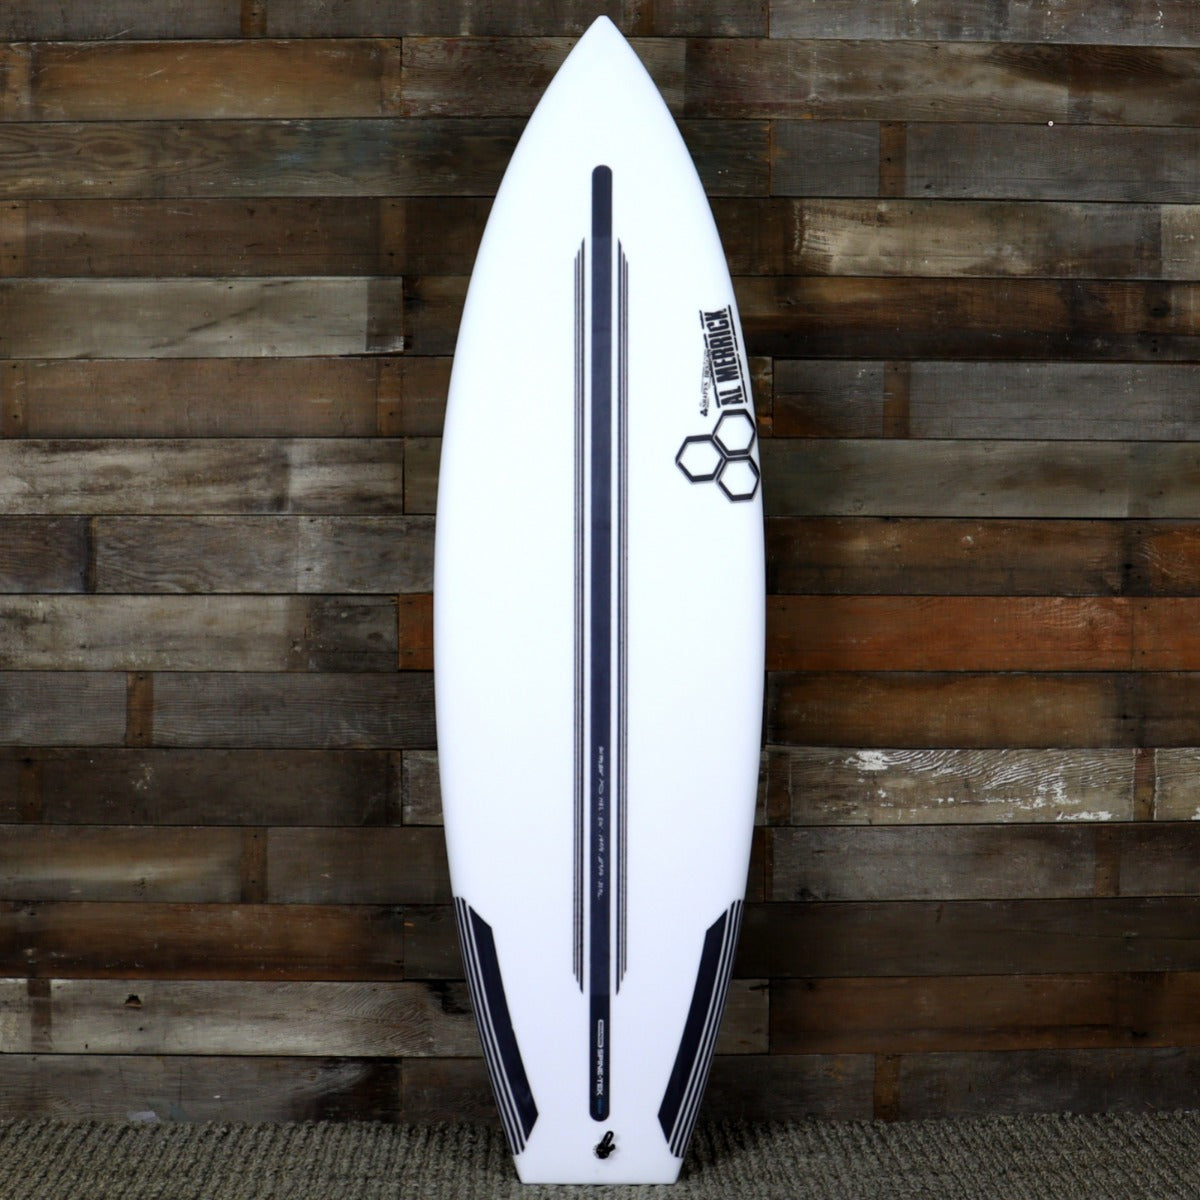 Channel Islands Neck Beard 2 Spine-Tek 5'10 x 19 ⅞ x 2 9/16 Surfboard